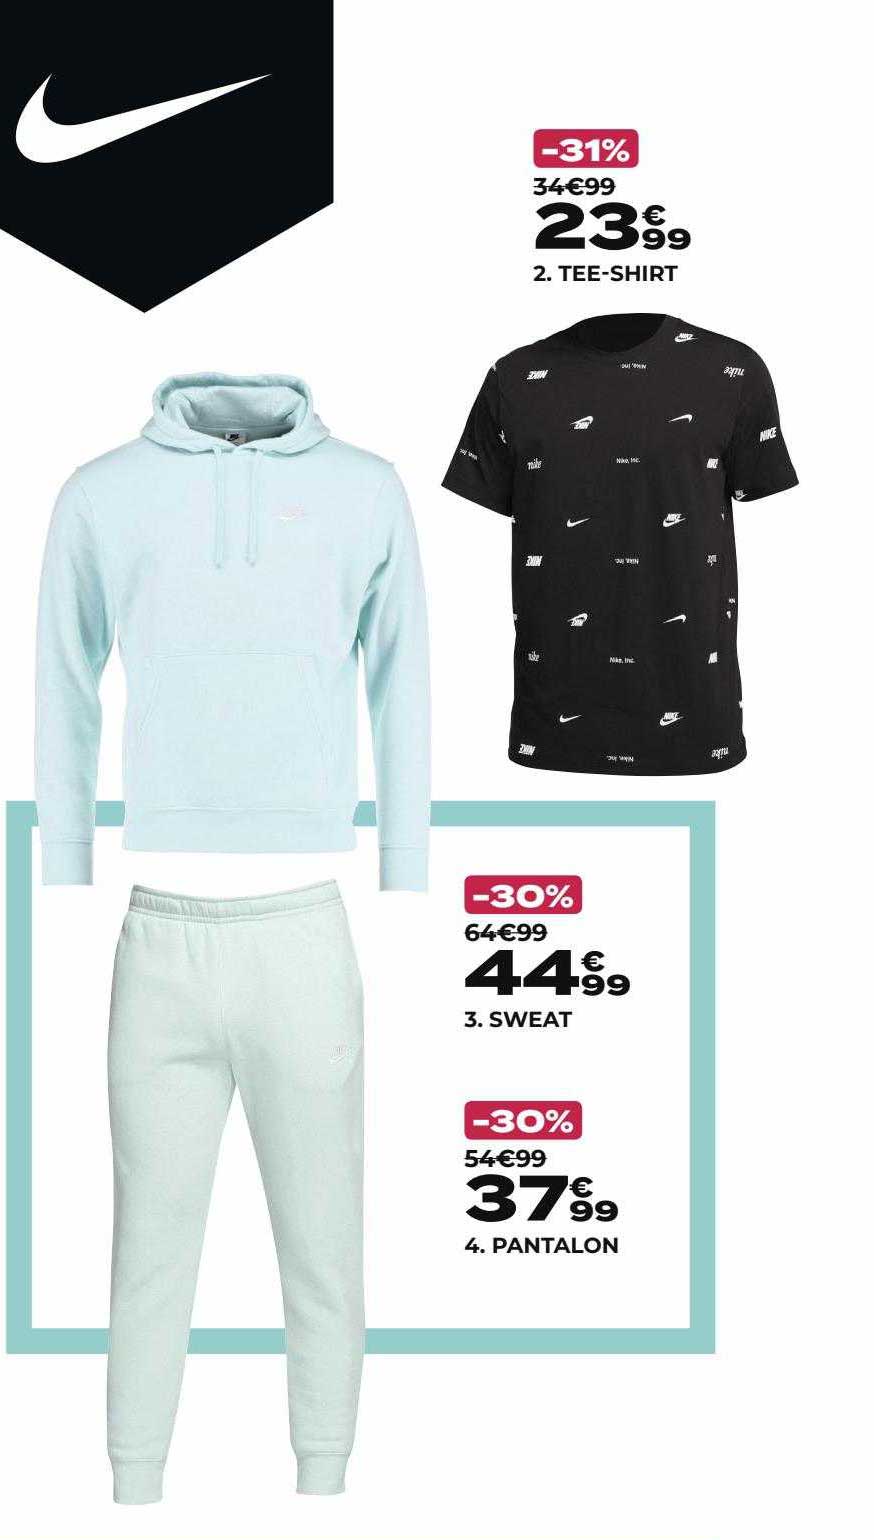 Promo Tee-shirt Nike, Sweat Nike, Pantalon Nike chez GO Sport ...